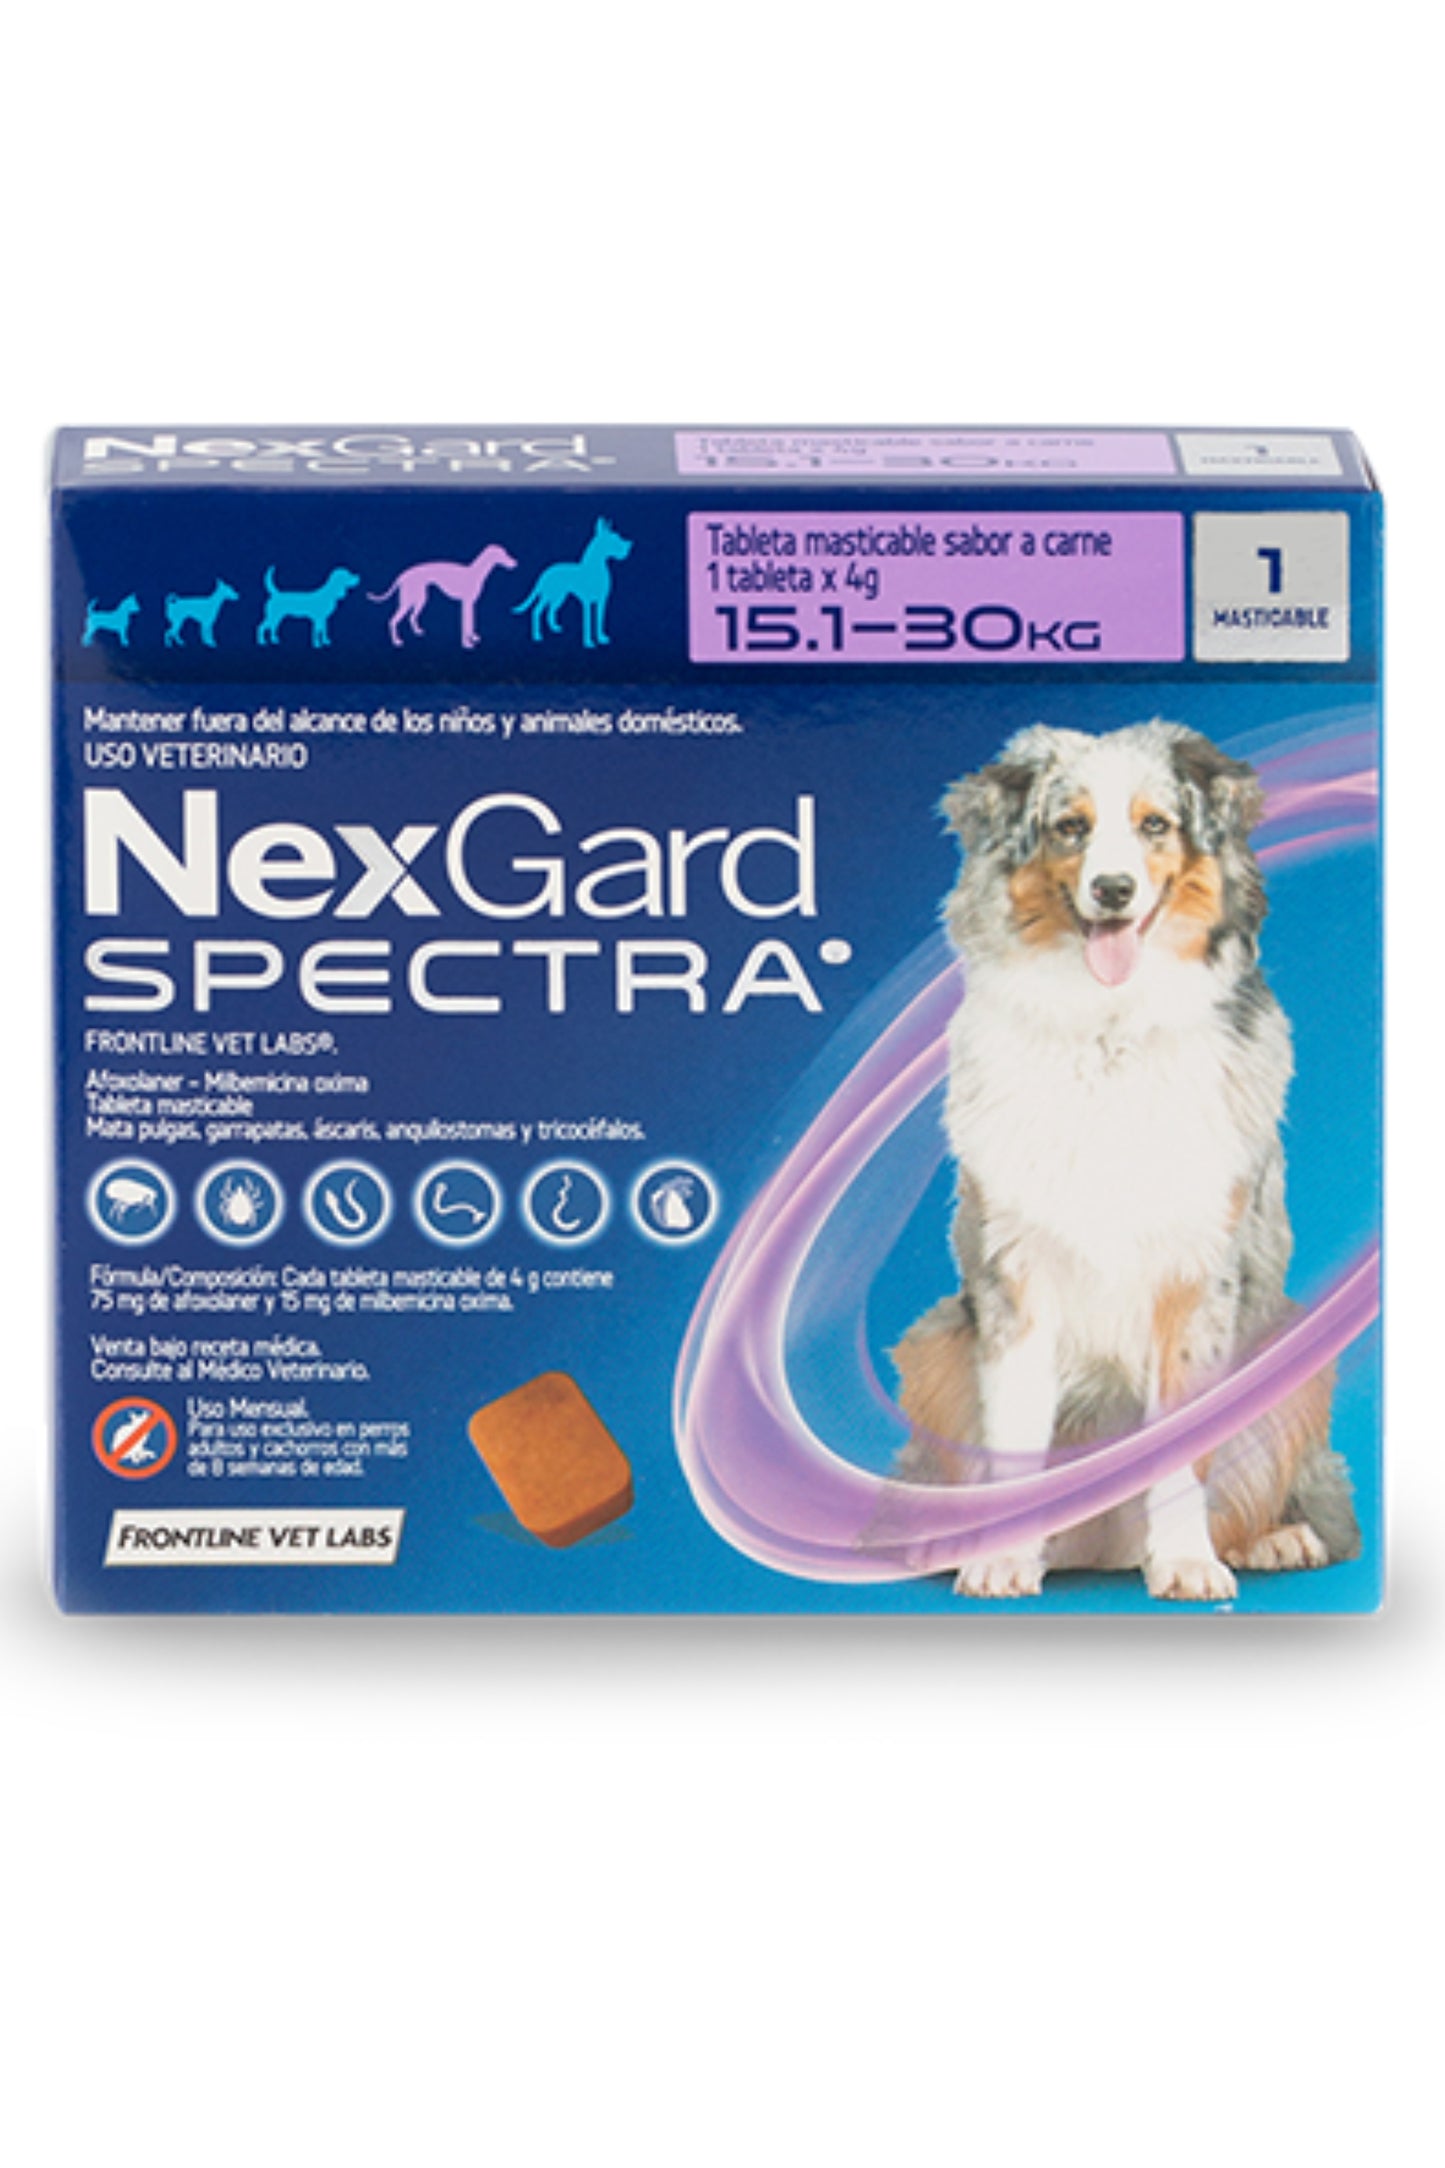 NexGard Spectra® | Anti pulgas, garrapatas y gusanos intestinales